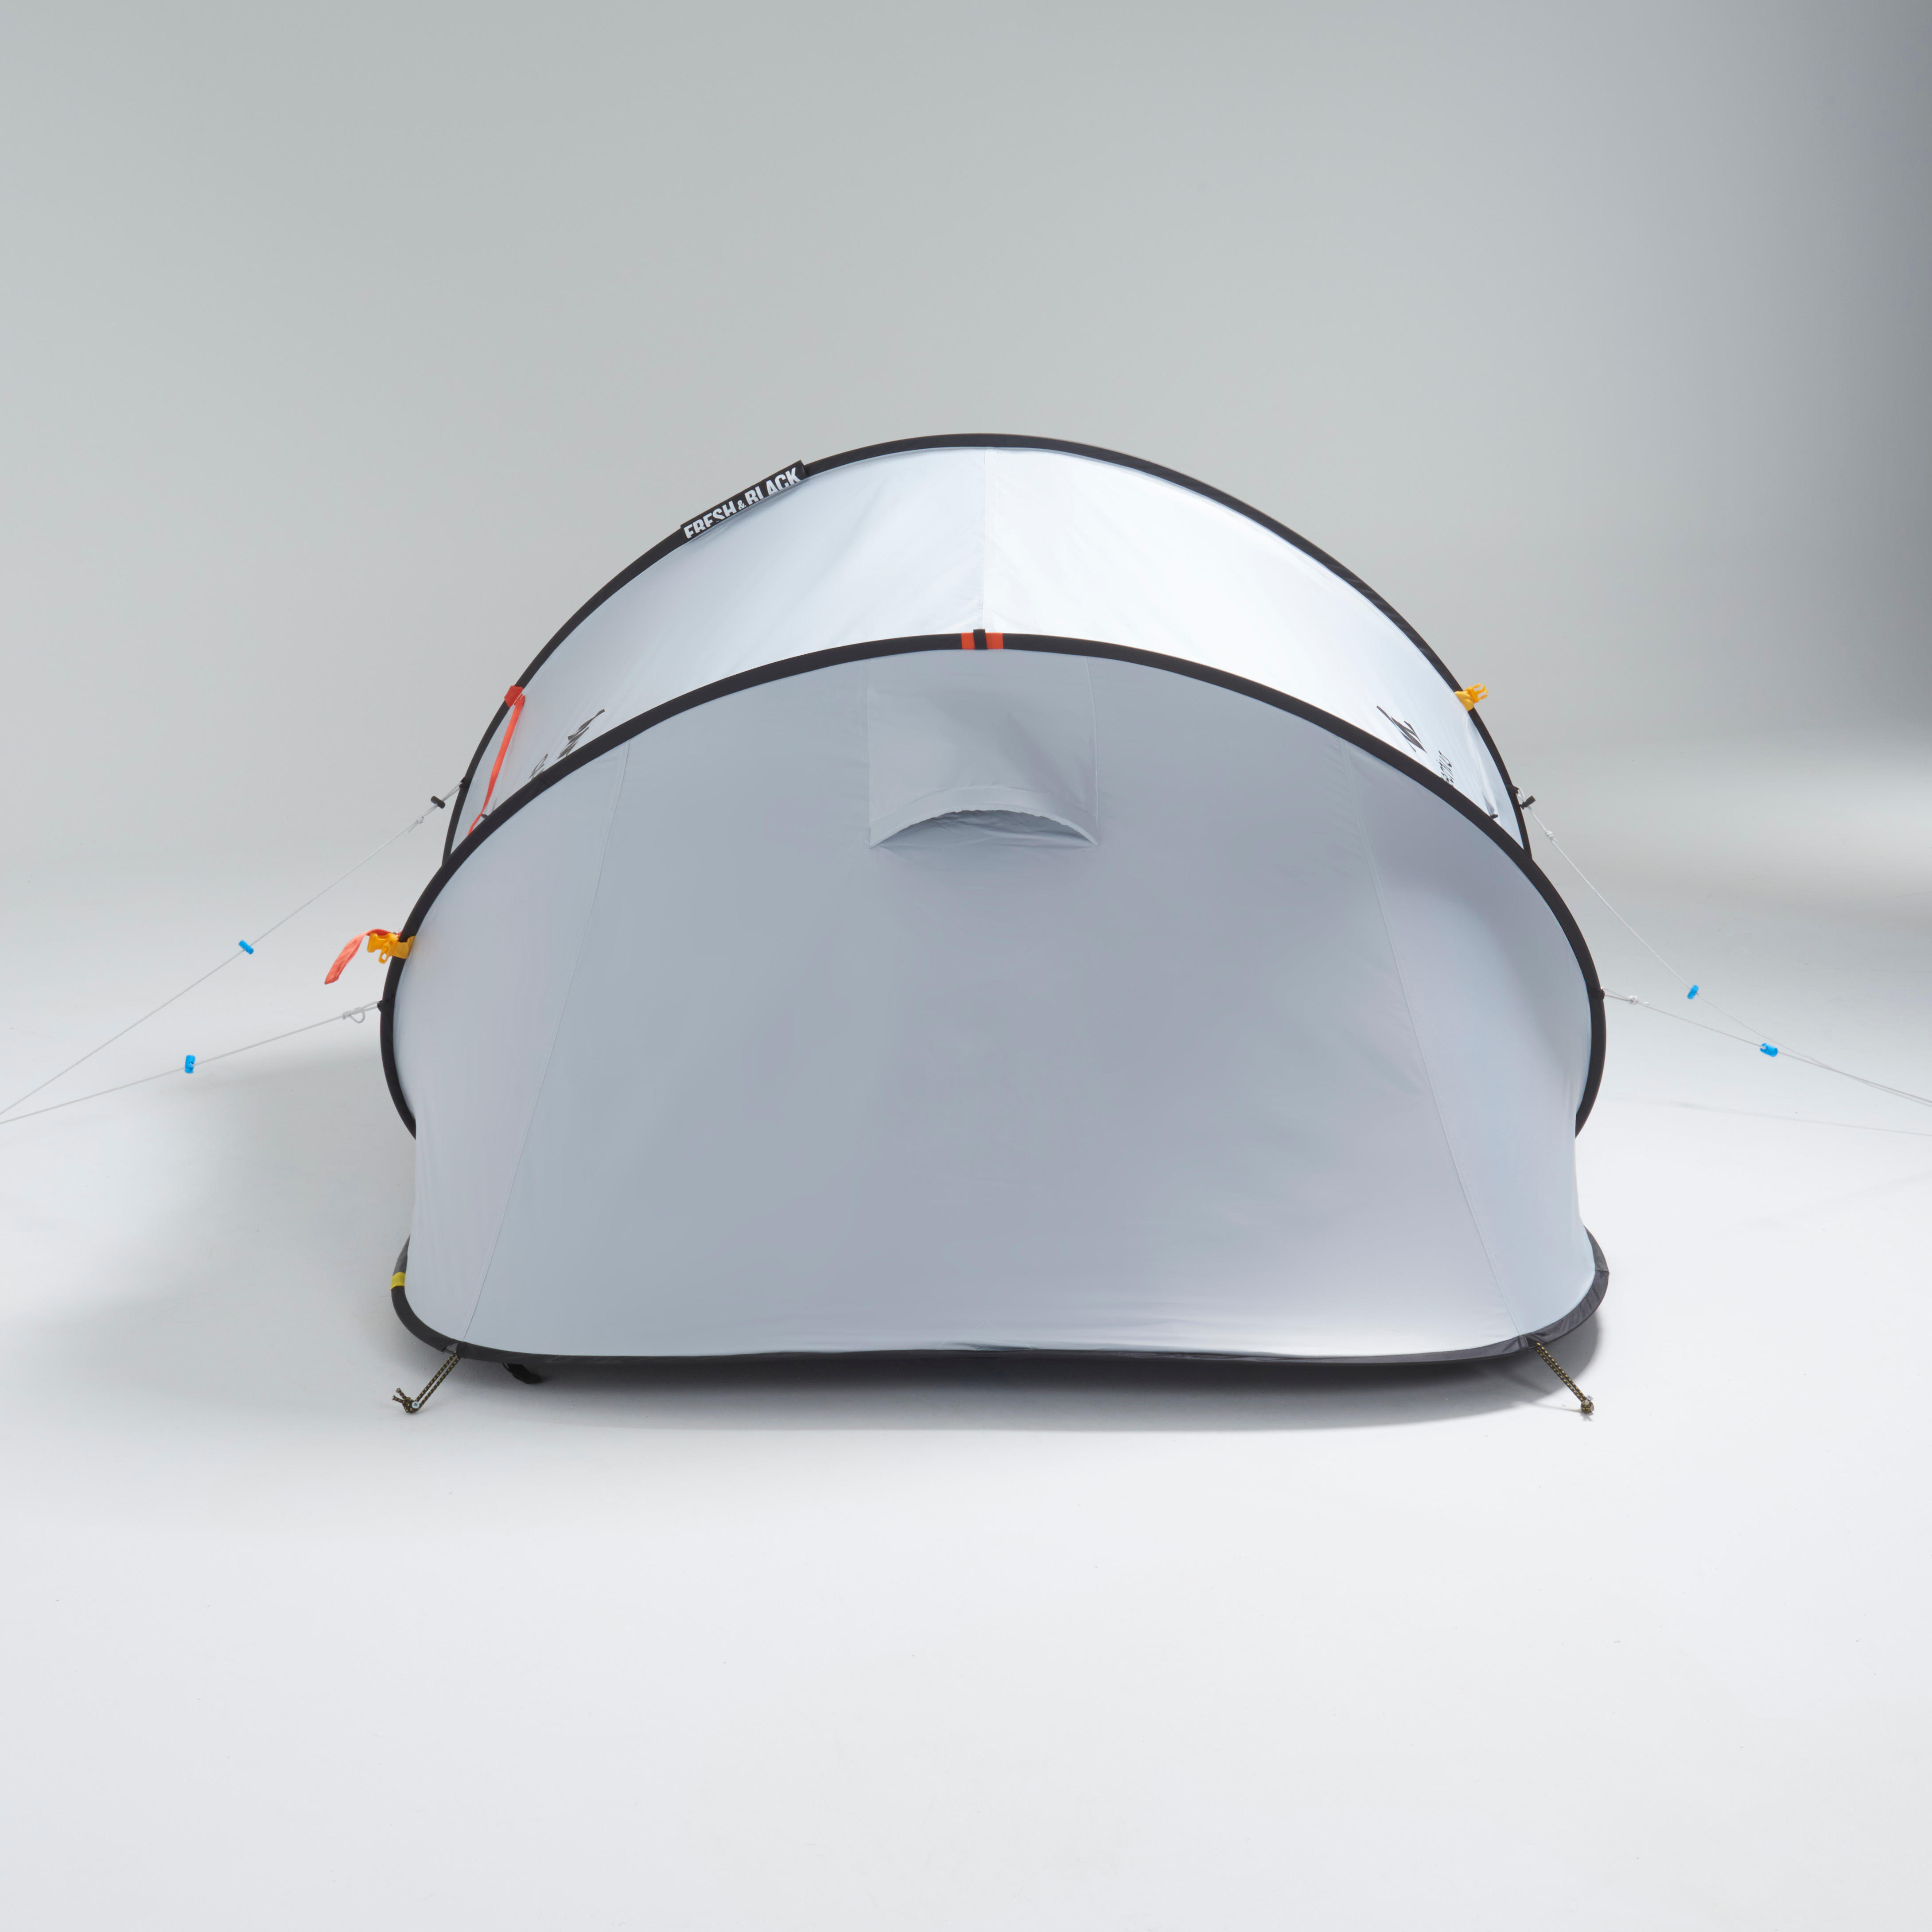 2-Person Camping Tent - 2 Seconds Fresh & Black - QUECHUA